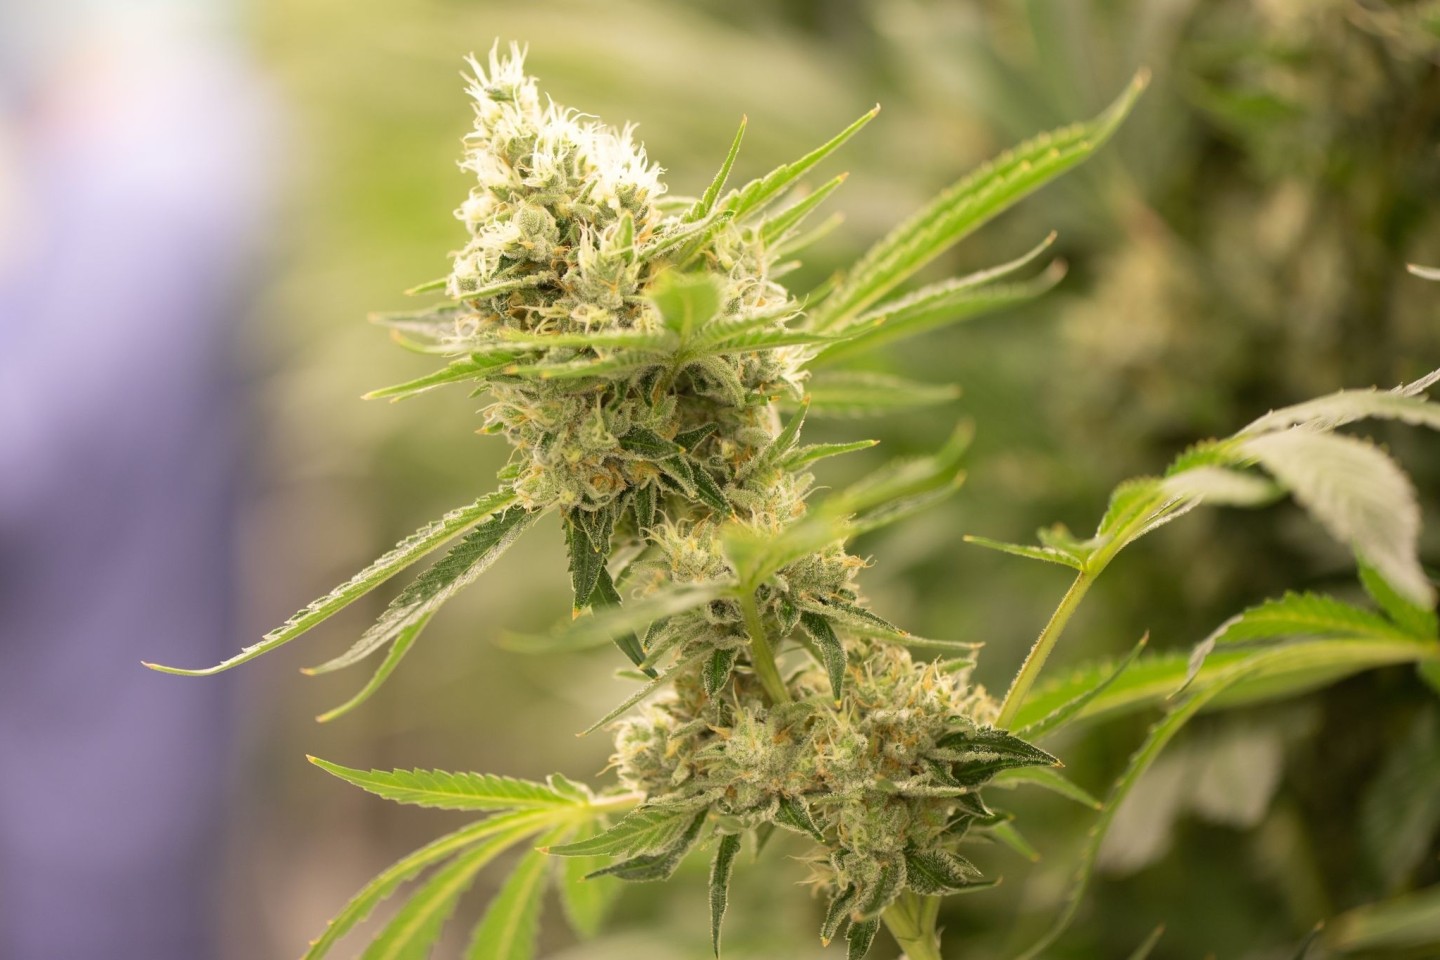 Die Polizei in Österreich fand Cannabis in rauen Mengen.